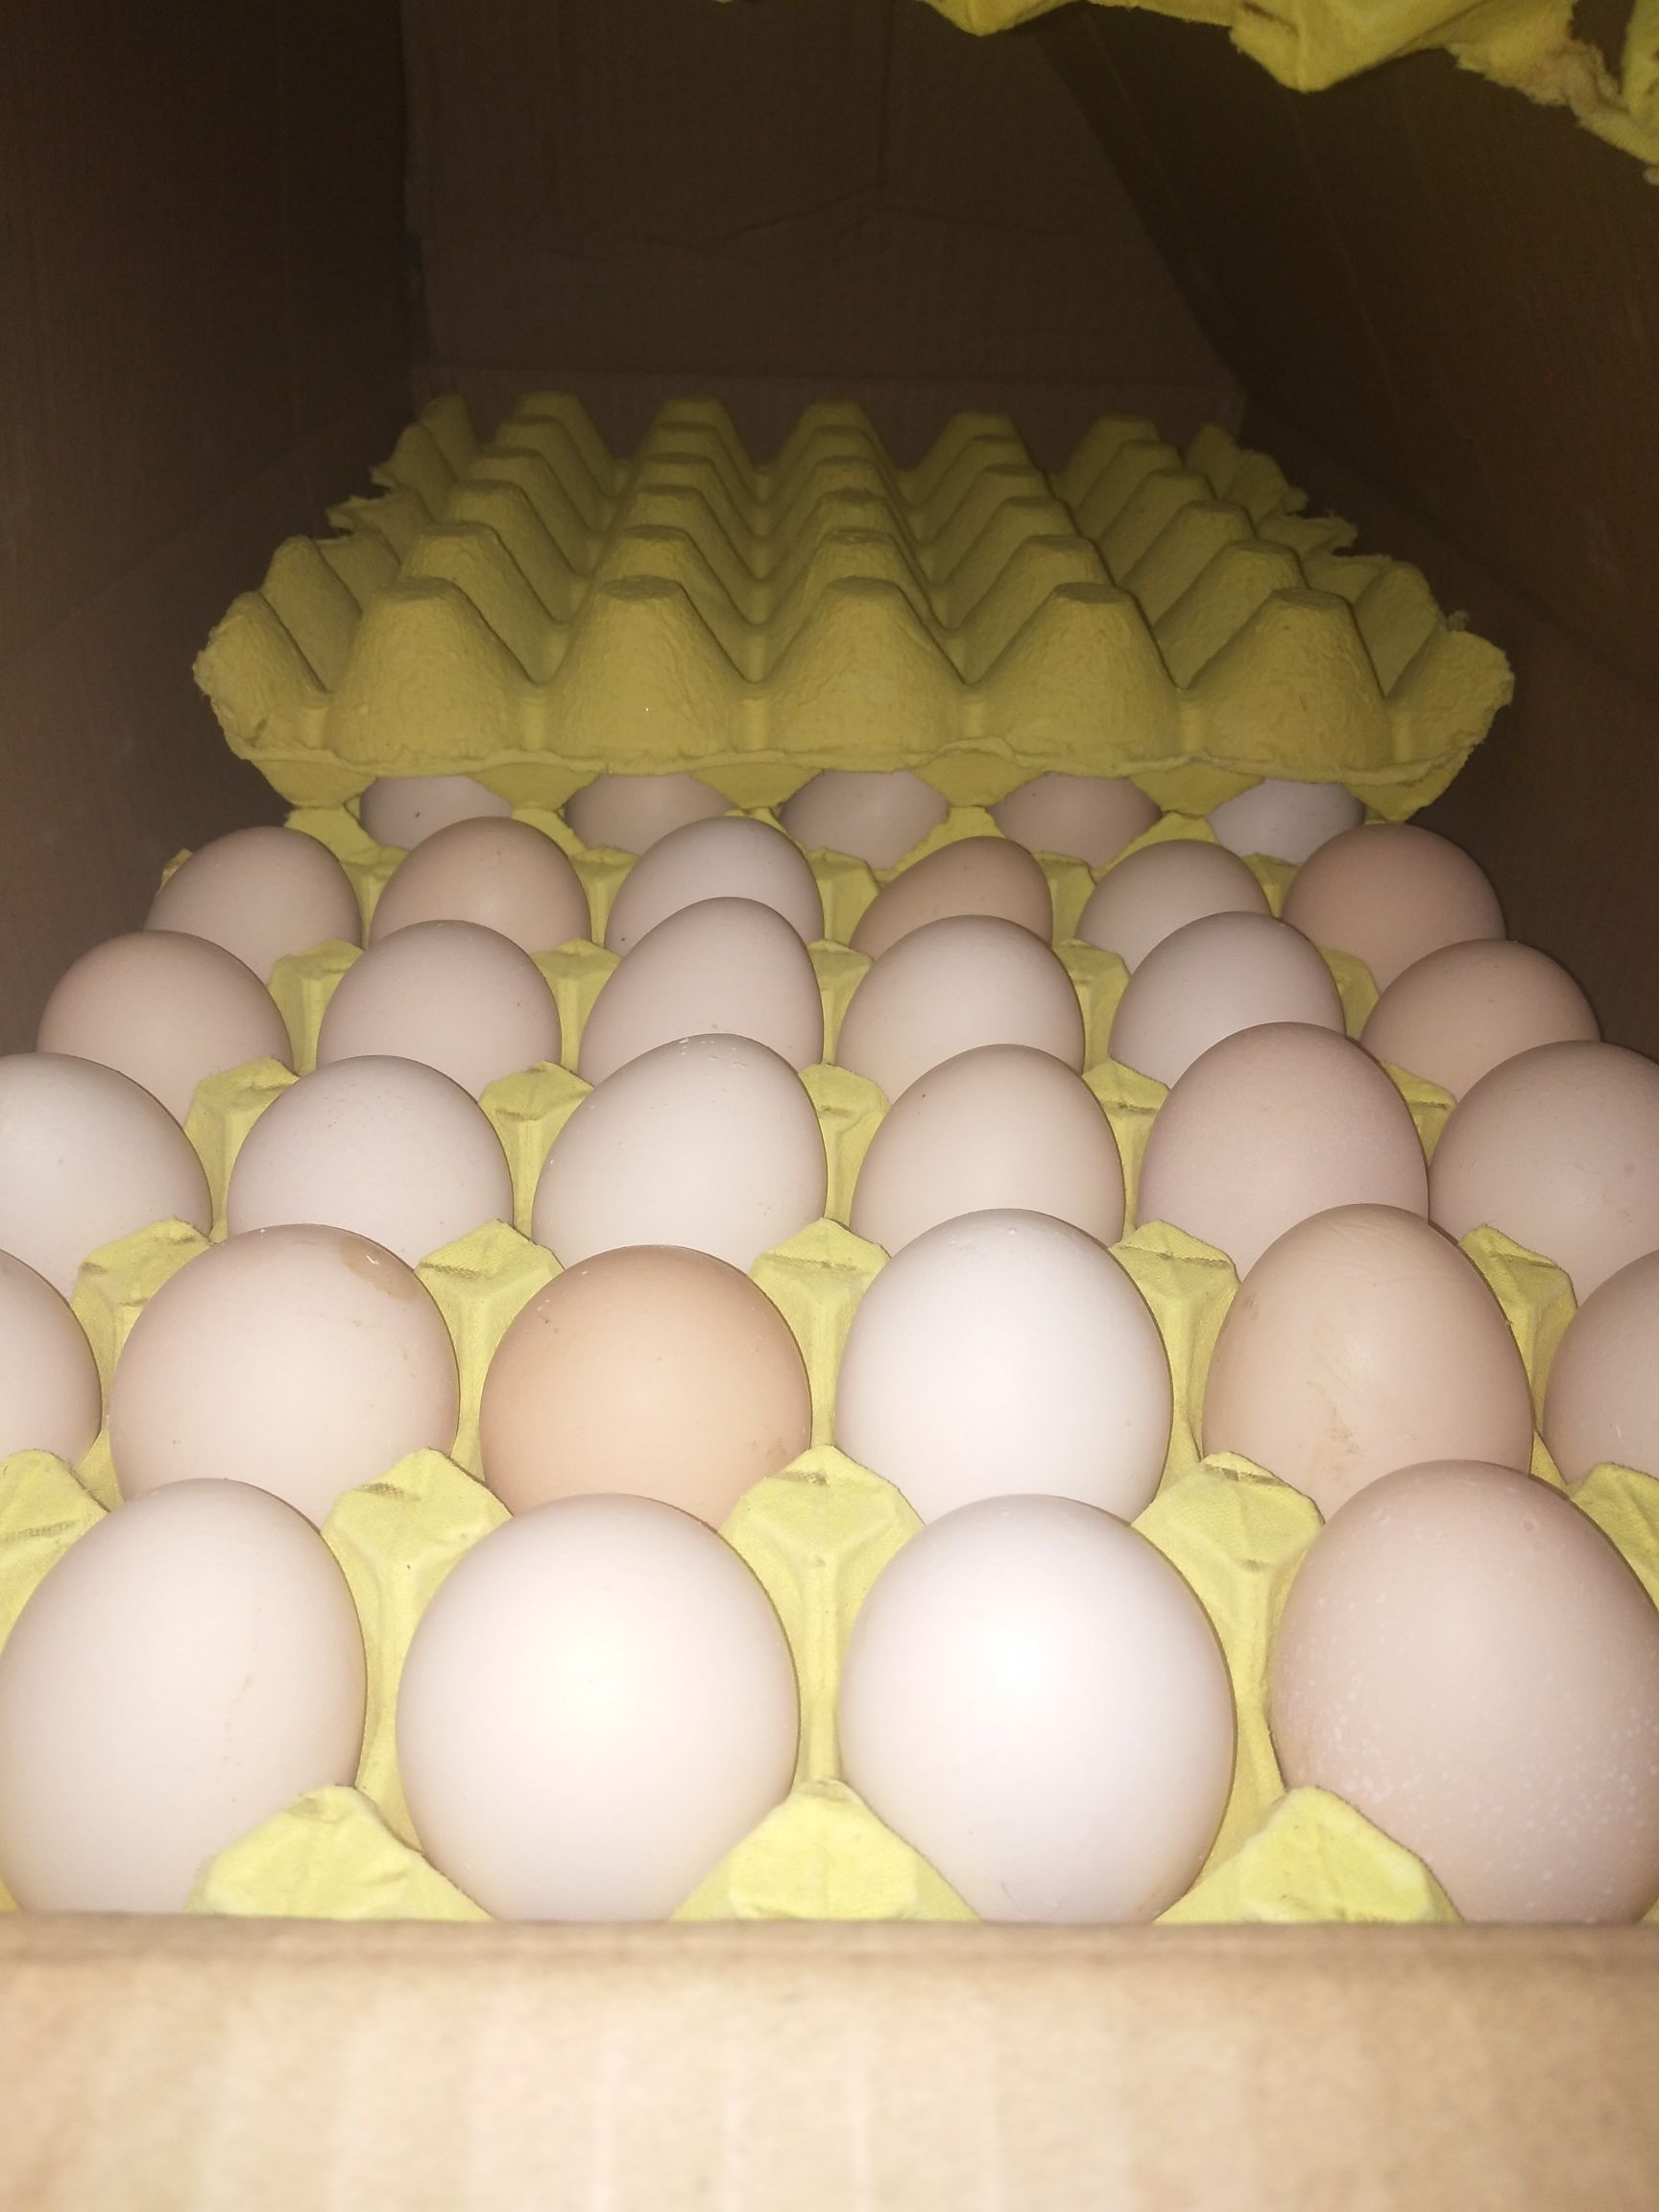 [粉壳蛋批发]粉蛋 食用 箱装价格200元/箱 